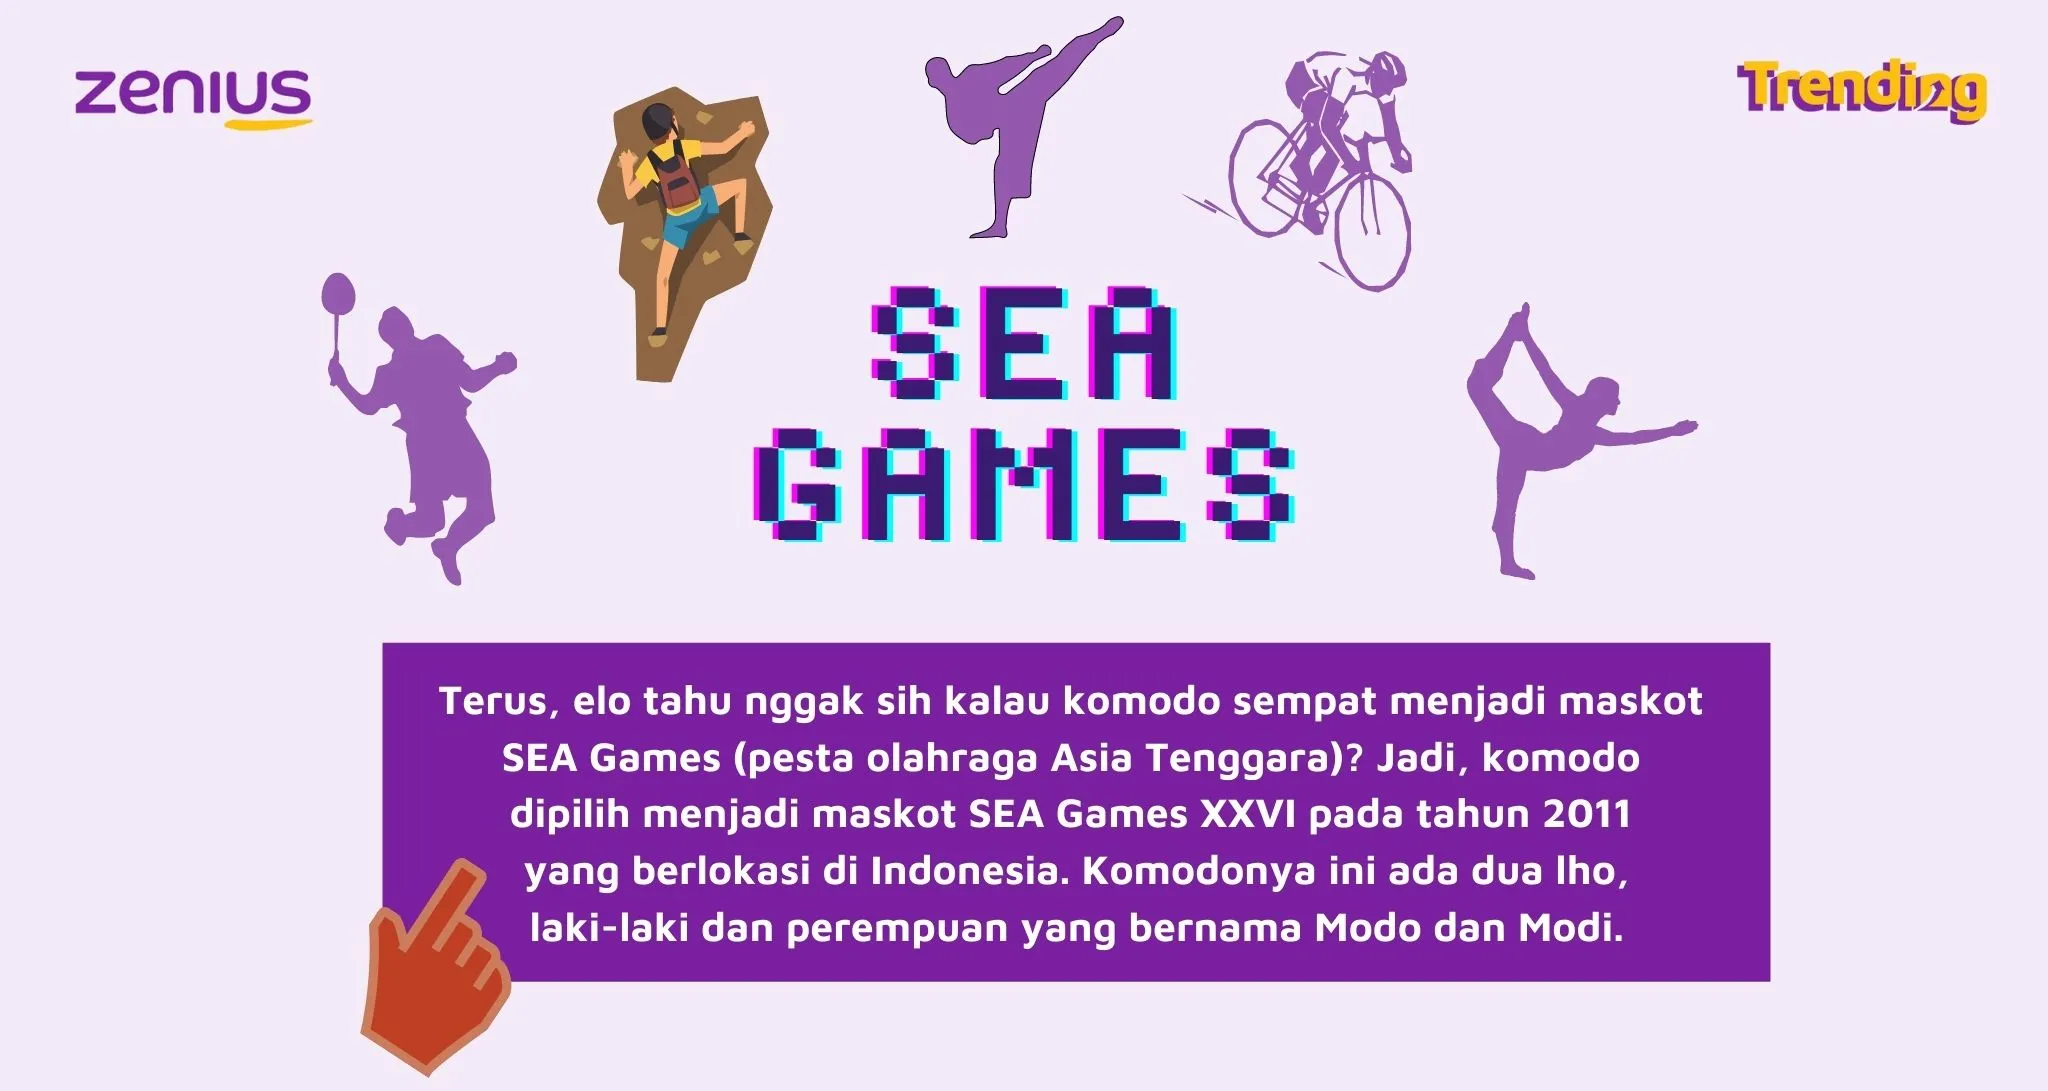 Komodo sebagai maskot SEA Games 2011 (Arsip Zenius)
